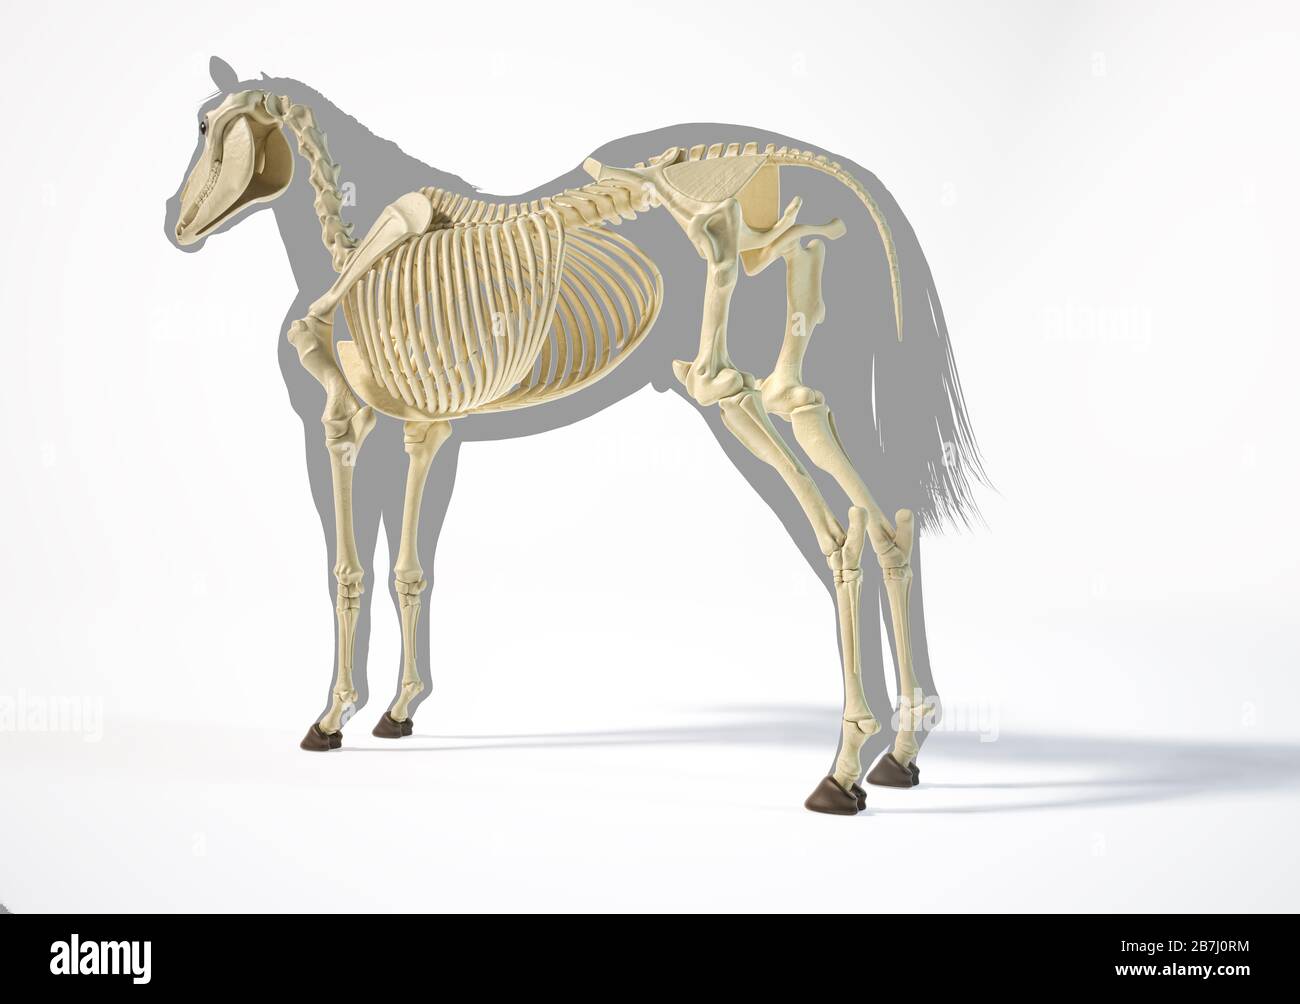 Anatomie du cheval. Système squelettique sur silhouette grise, perspective arrière latérale sur fond blanc. Chemin d'écrêtage inclus. Banque D'Images